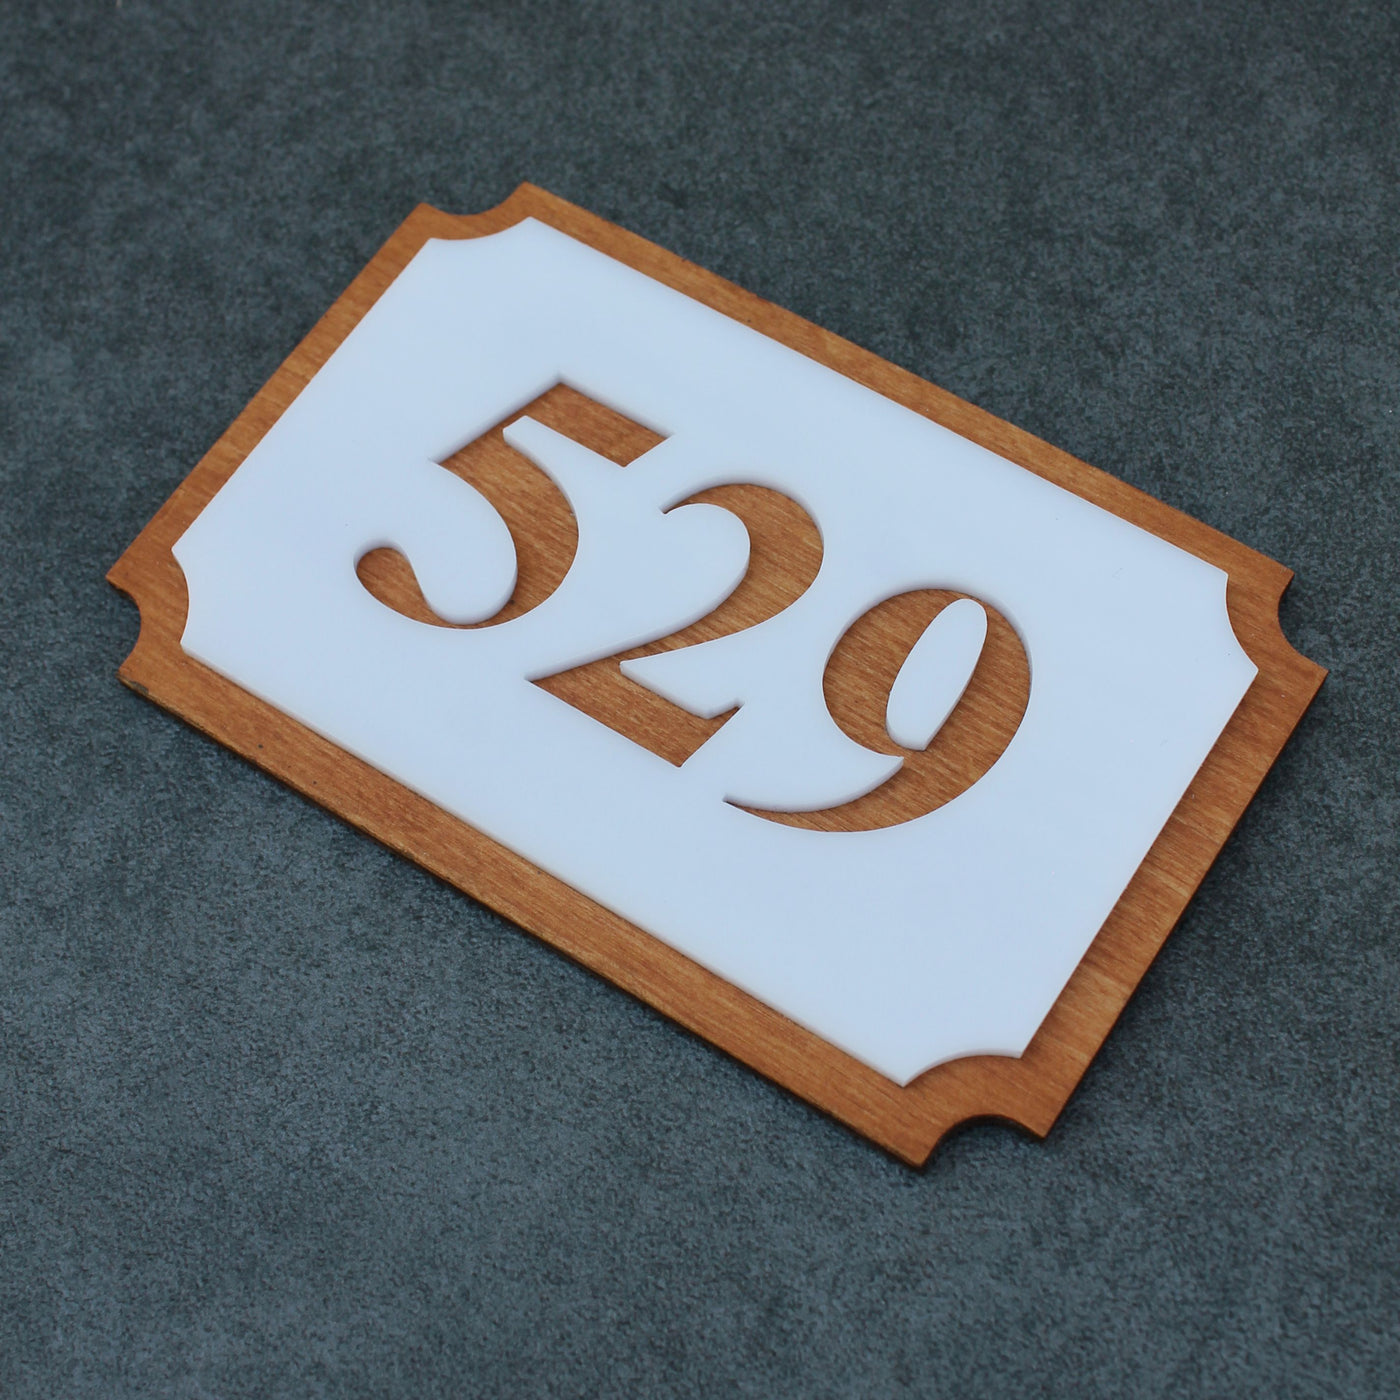 Wood Room Numbers Door Numbers horizontal Bsign